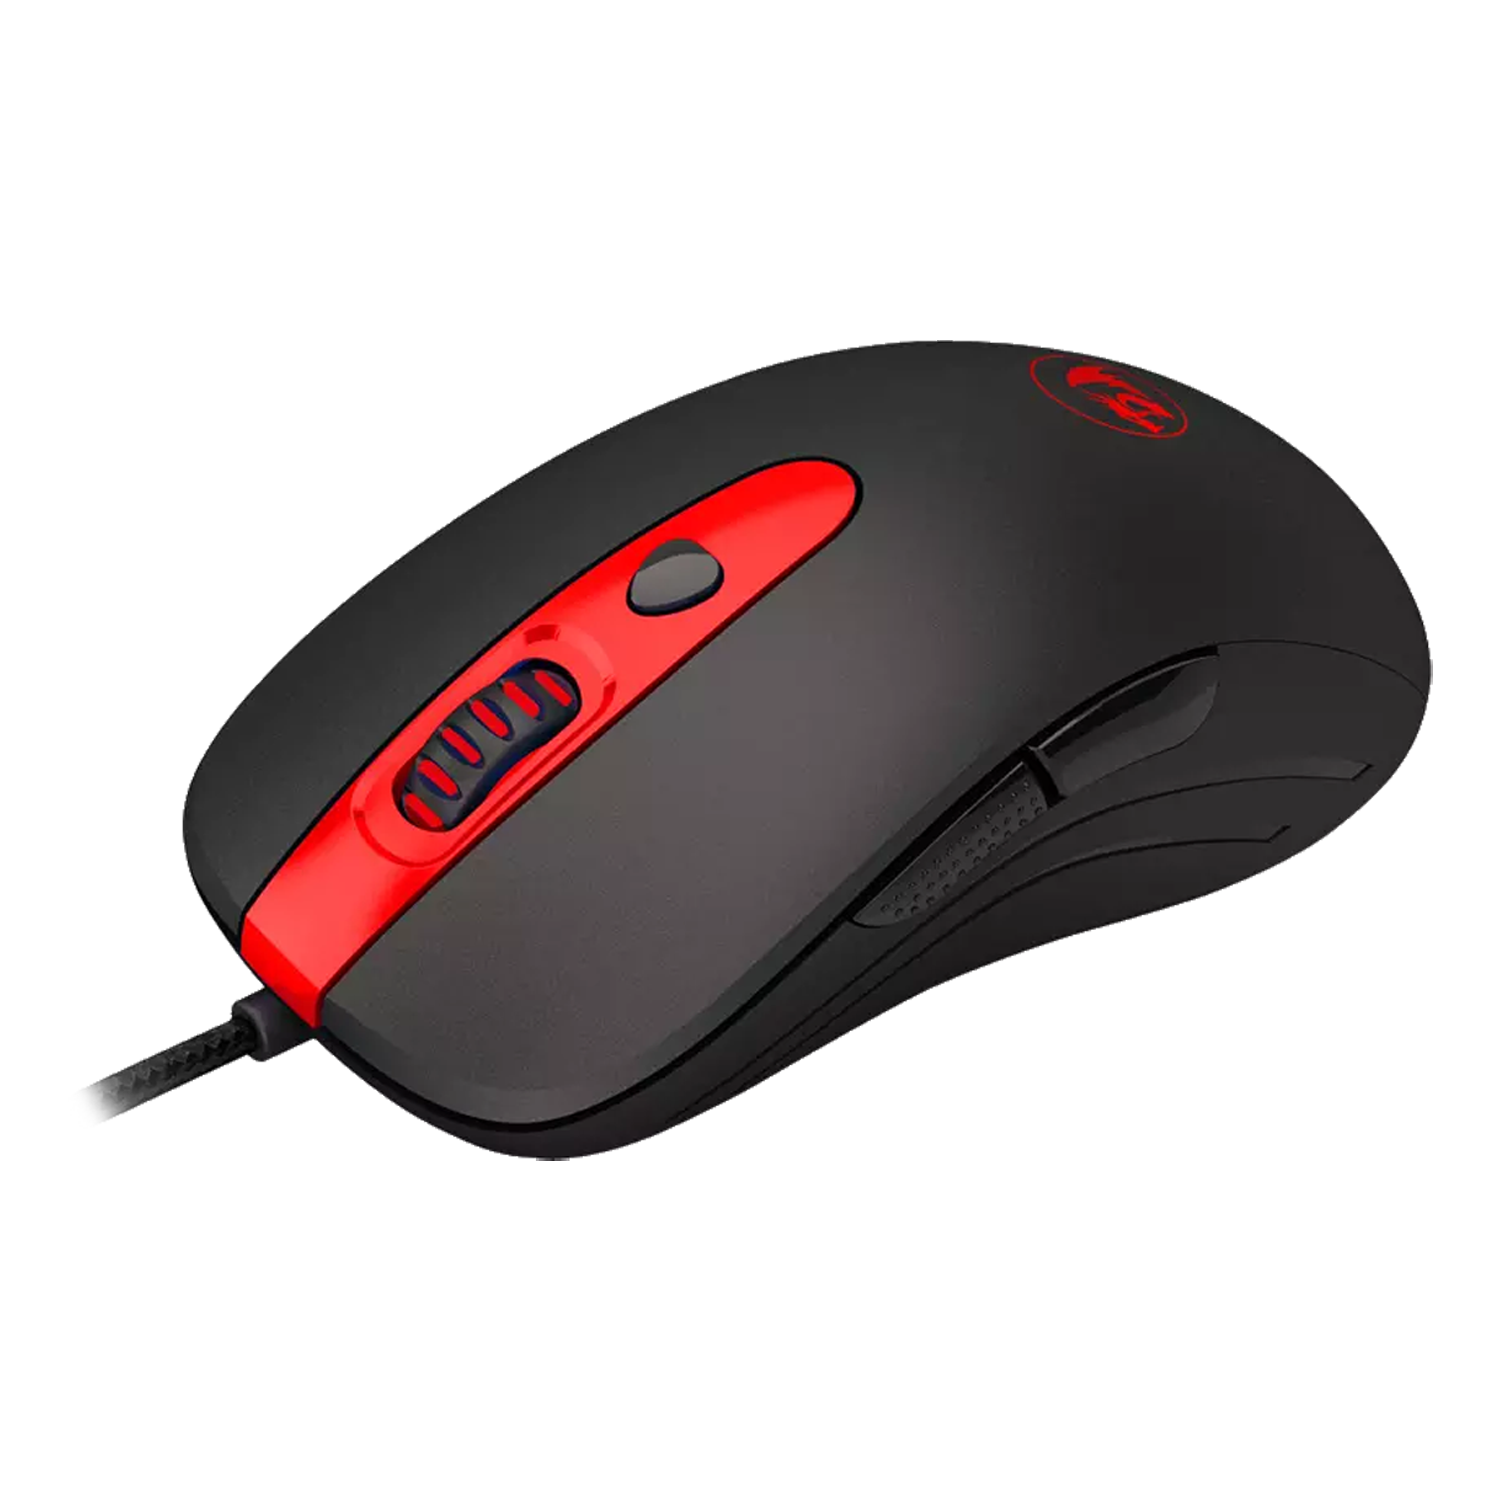 Mouse Gamer Redragon Cerberus M703 - Preto